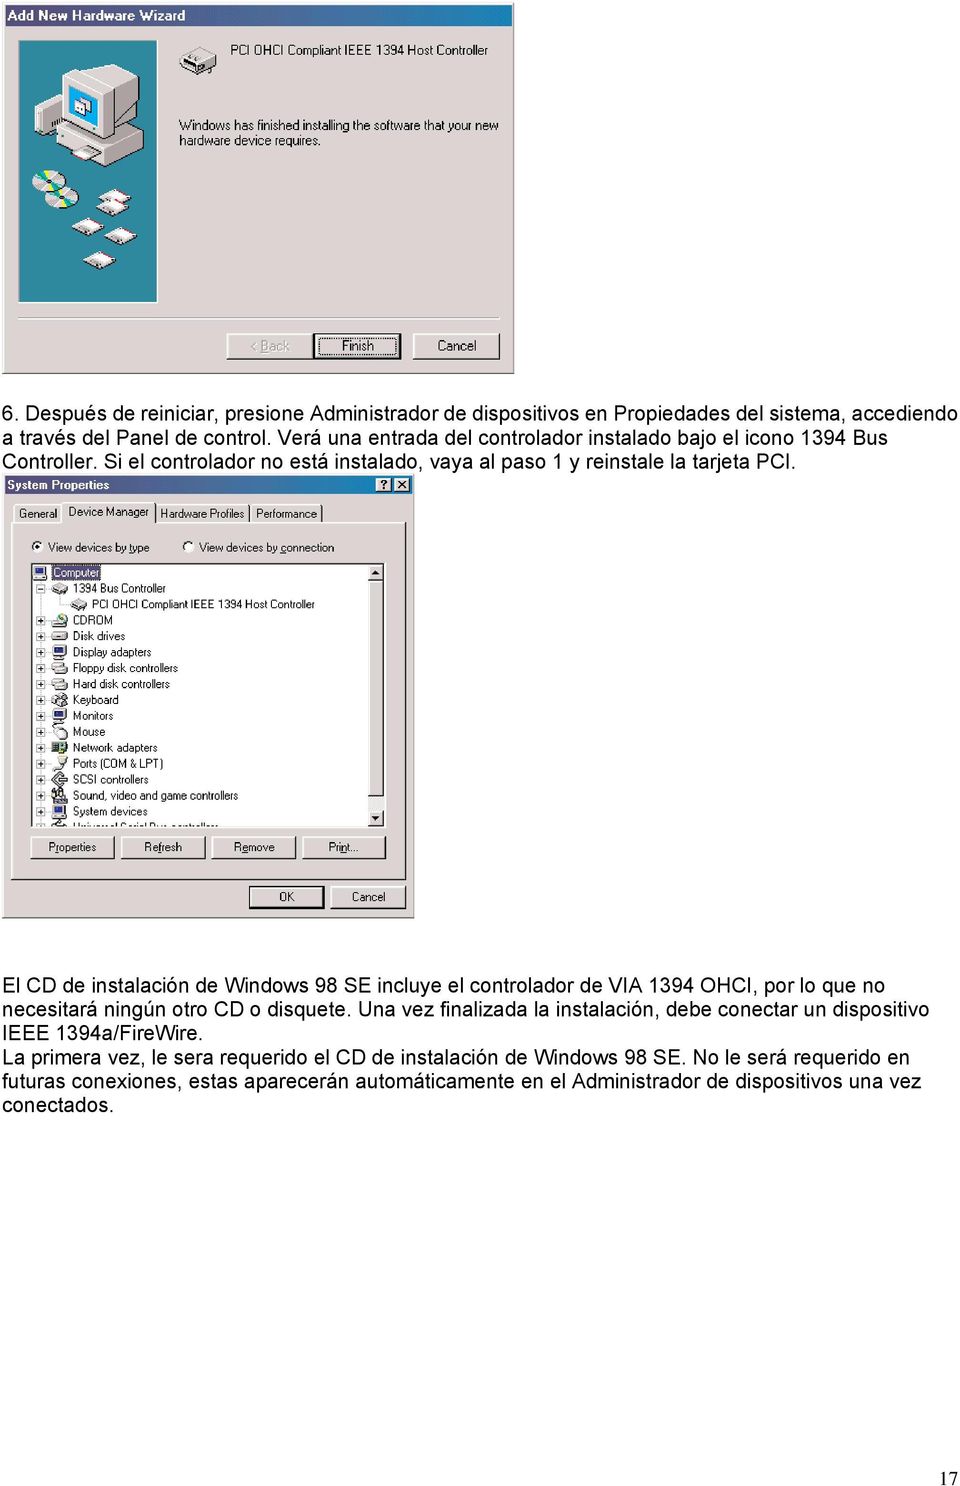 El CD de instalación de Windows 98 SE incluye el controlador de VIA 1394 OHCI, por lo que no necesitará ningún otro CD o disquete.